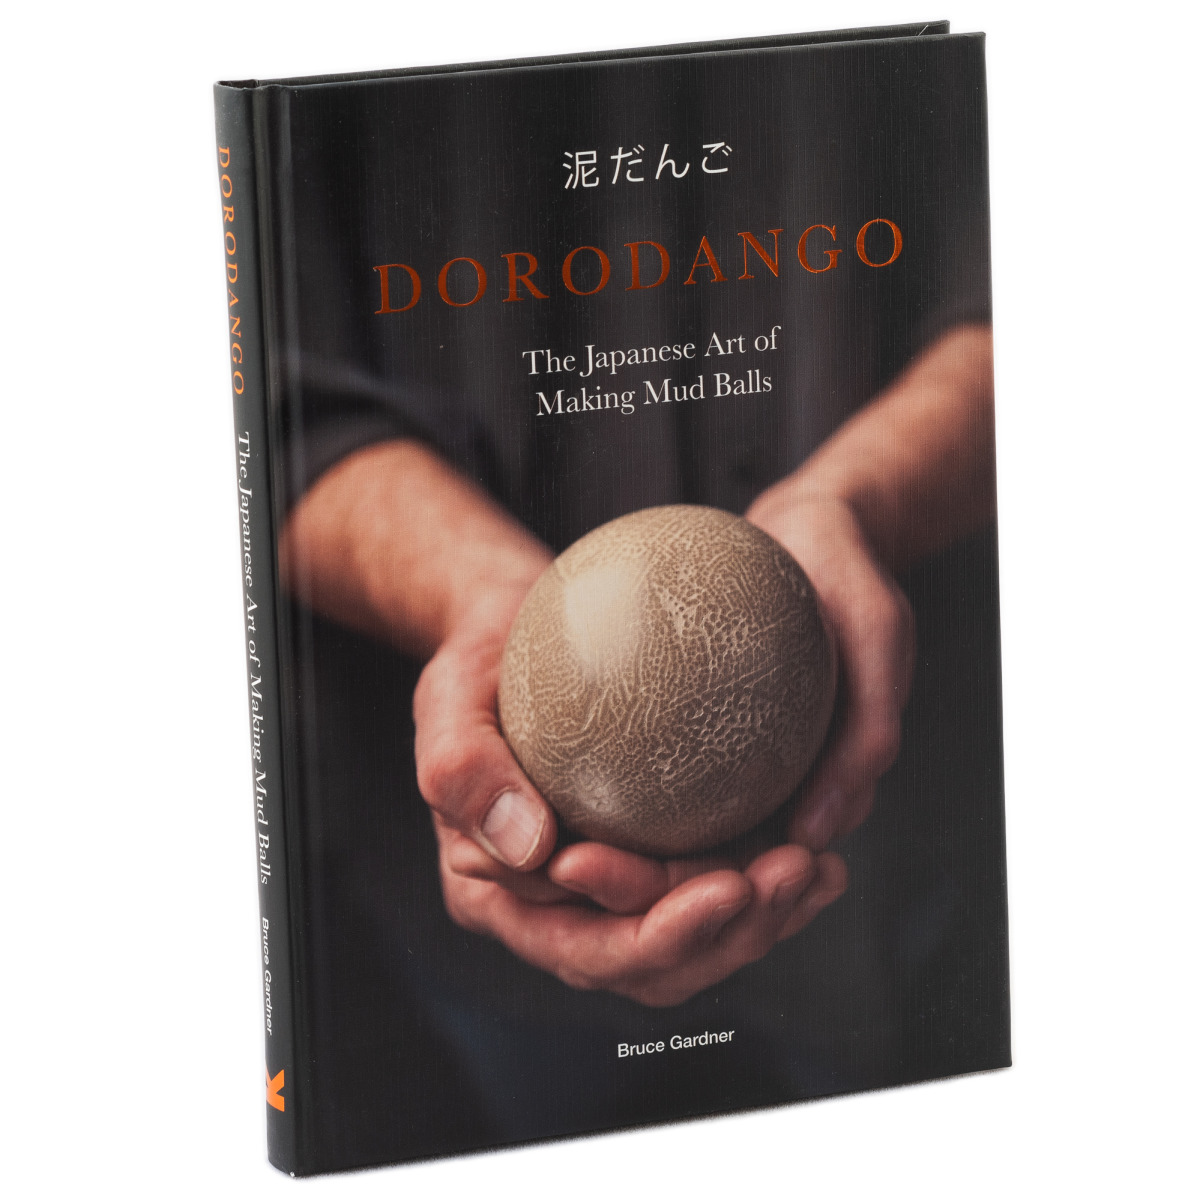 Dorodango: The Japanese Art of Making Mud Balls by Bruce Gardner